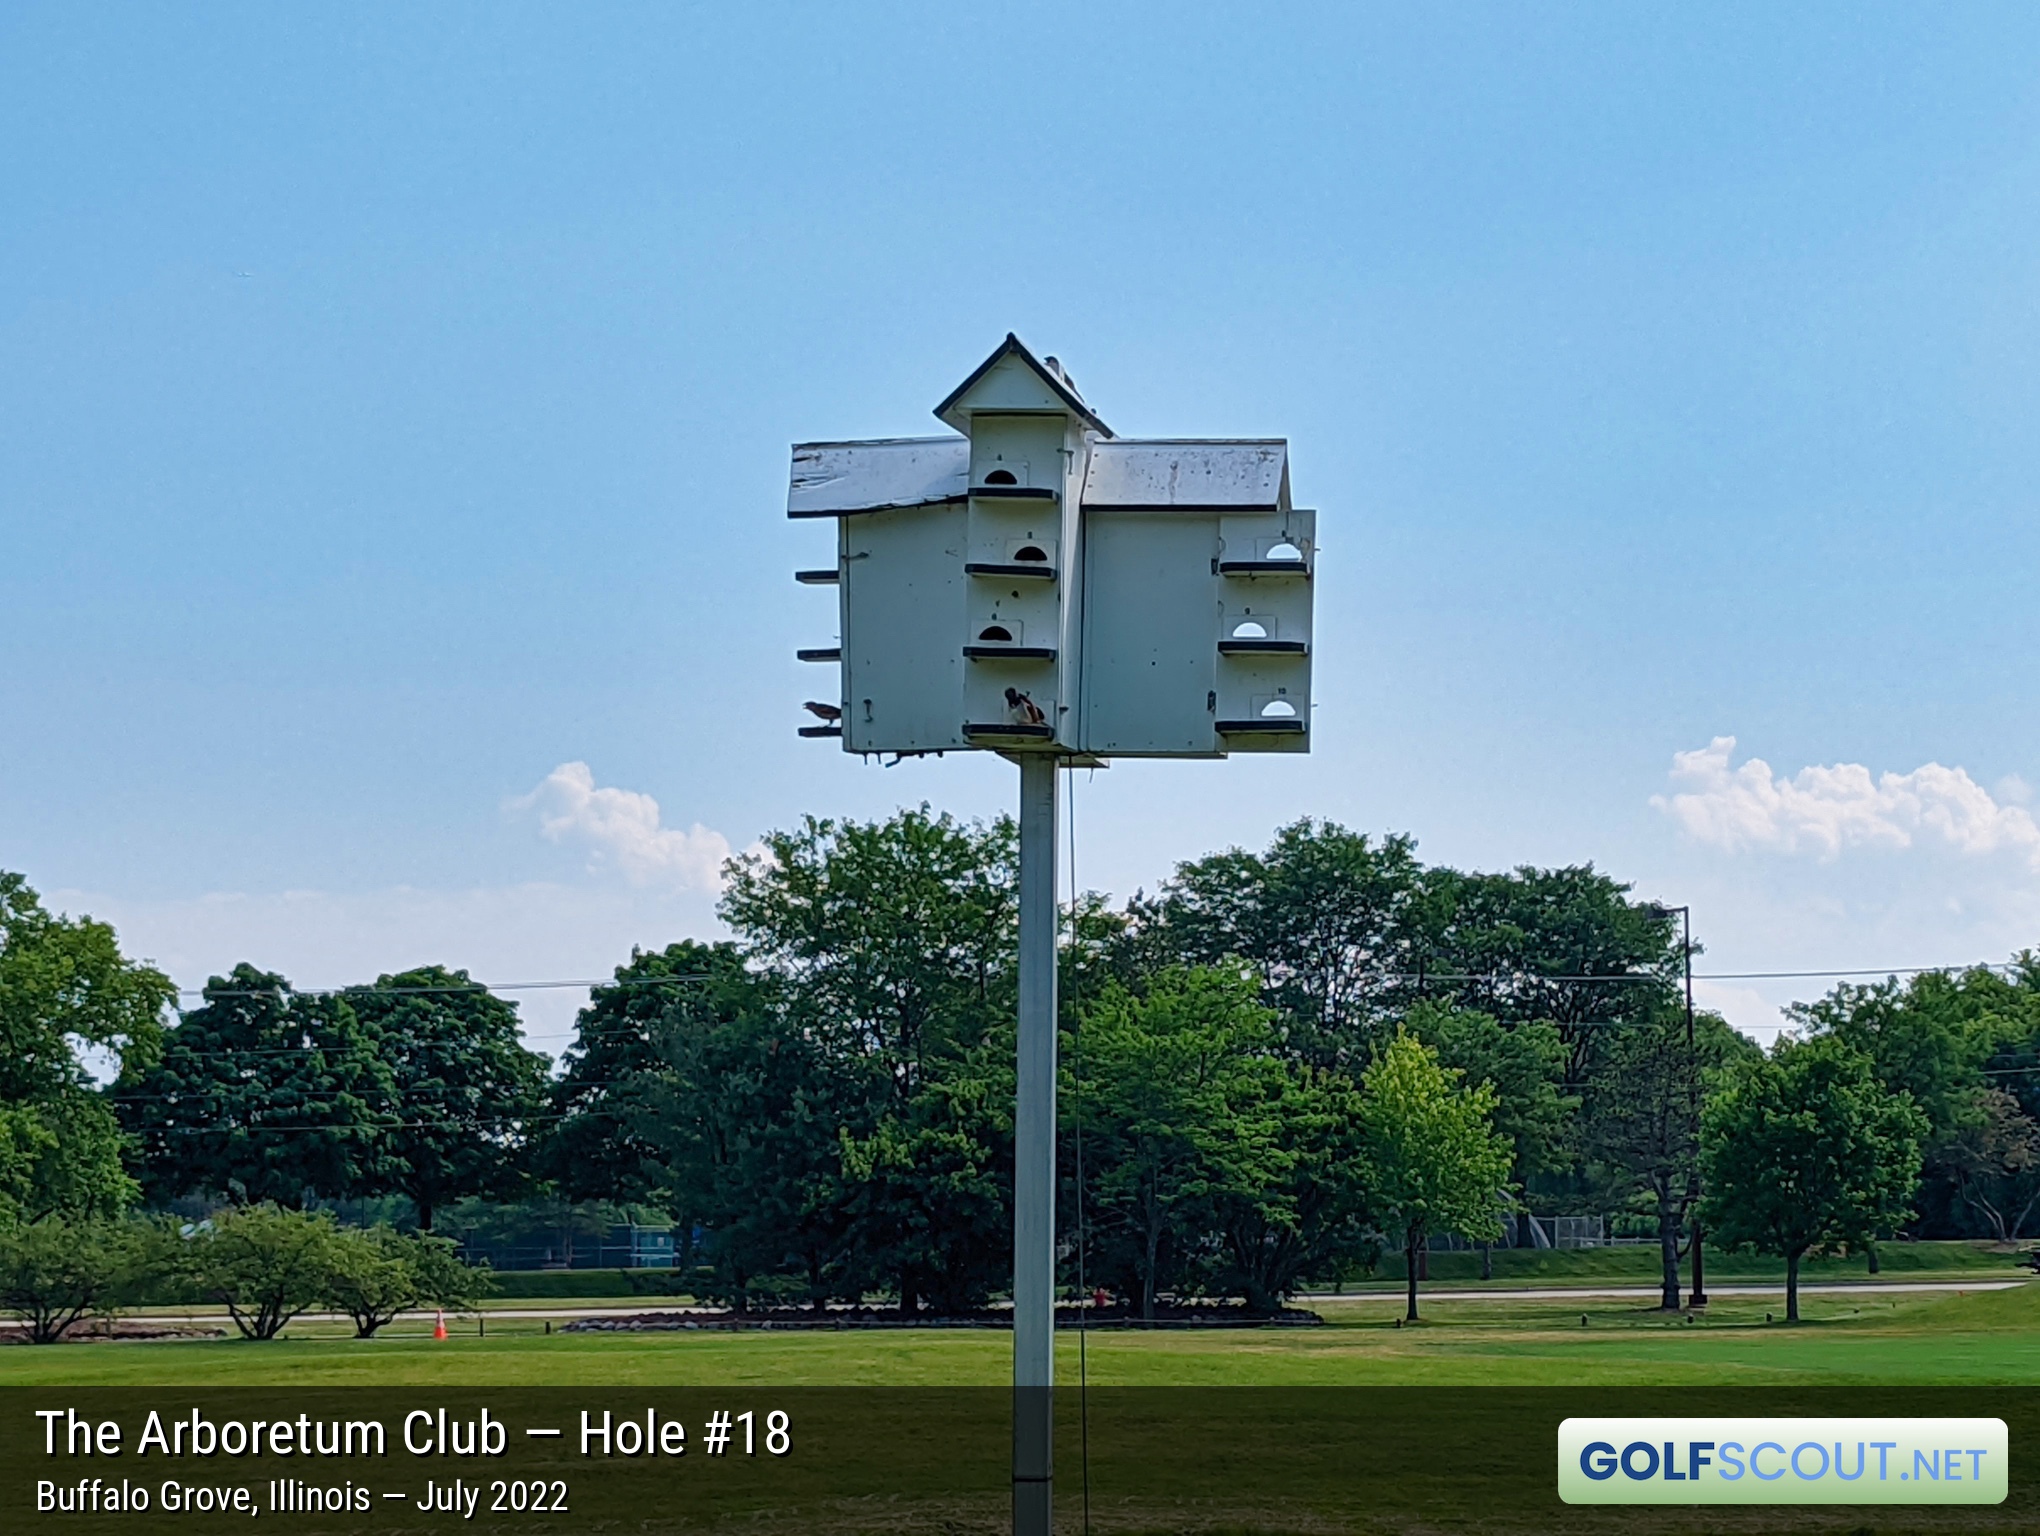 Photo of hole #18 at Arboretum Club in Buffalo Grove, Illinois. 